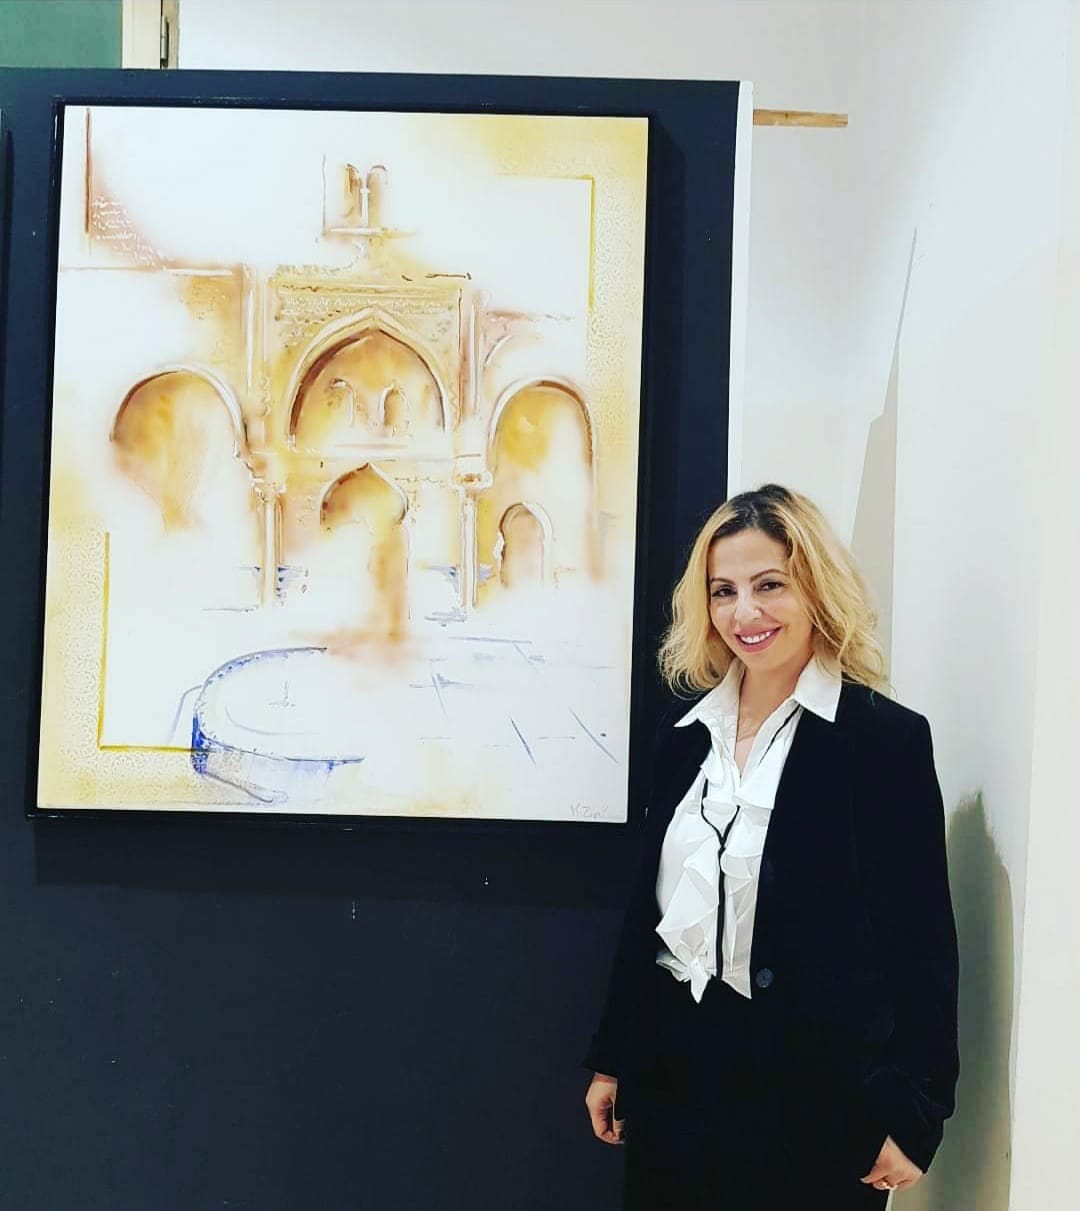 الفنانة كاميليا الزرقاني تشارك في معرض inspiration بالدار البيضاء